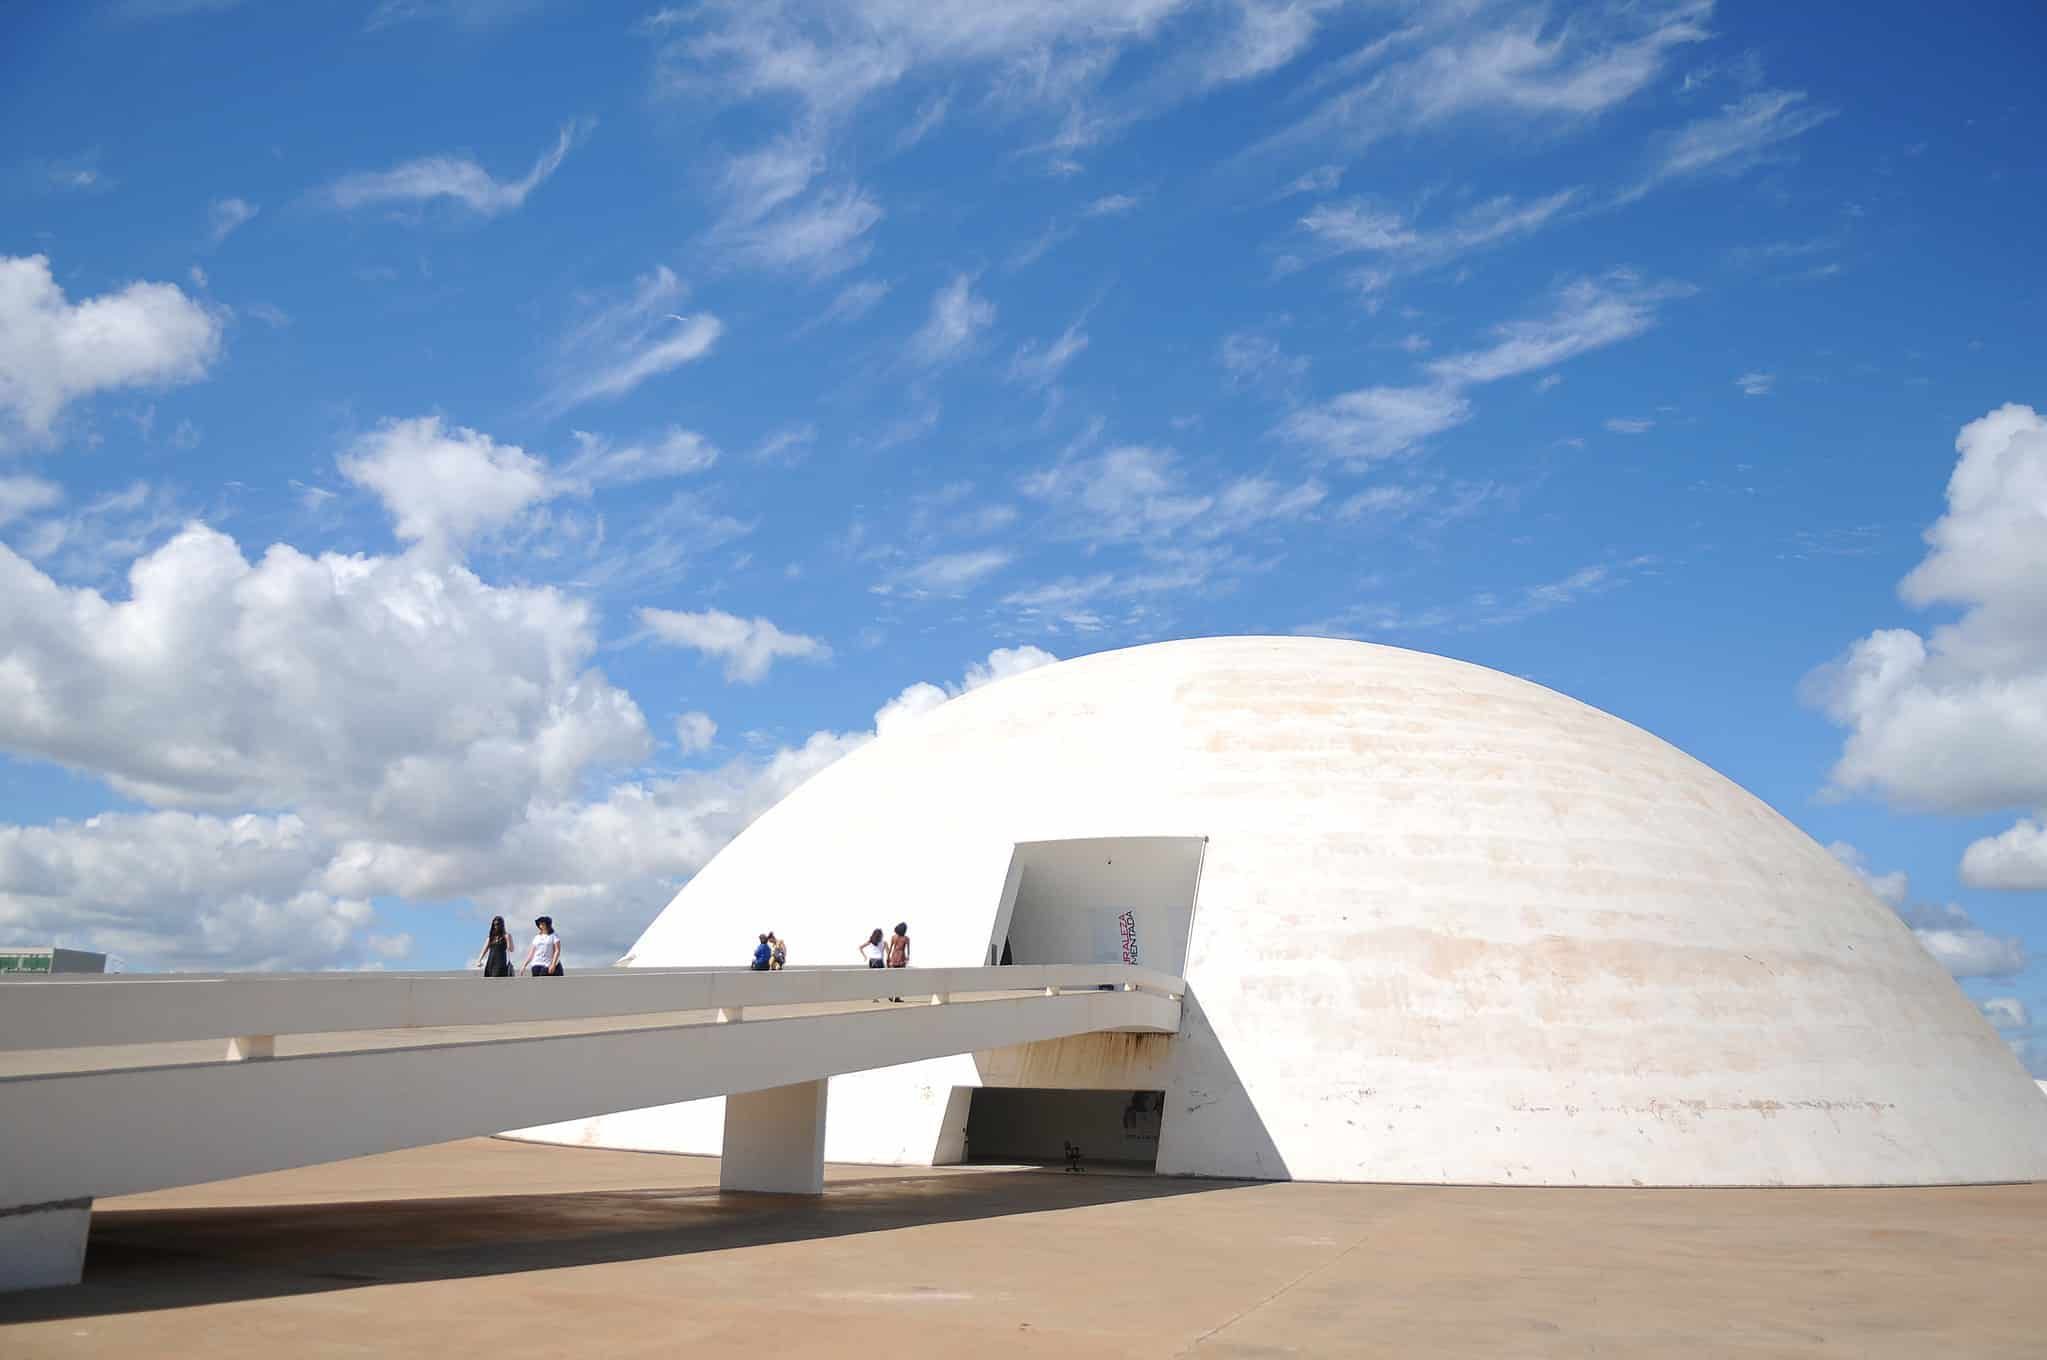 Museu Nacional Honestino Guimarães, Complexo Cultural da República um dos pontos turísticos de Brasília mais visitados por alunos das escolas da cidade.